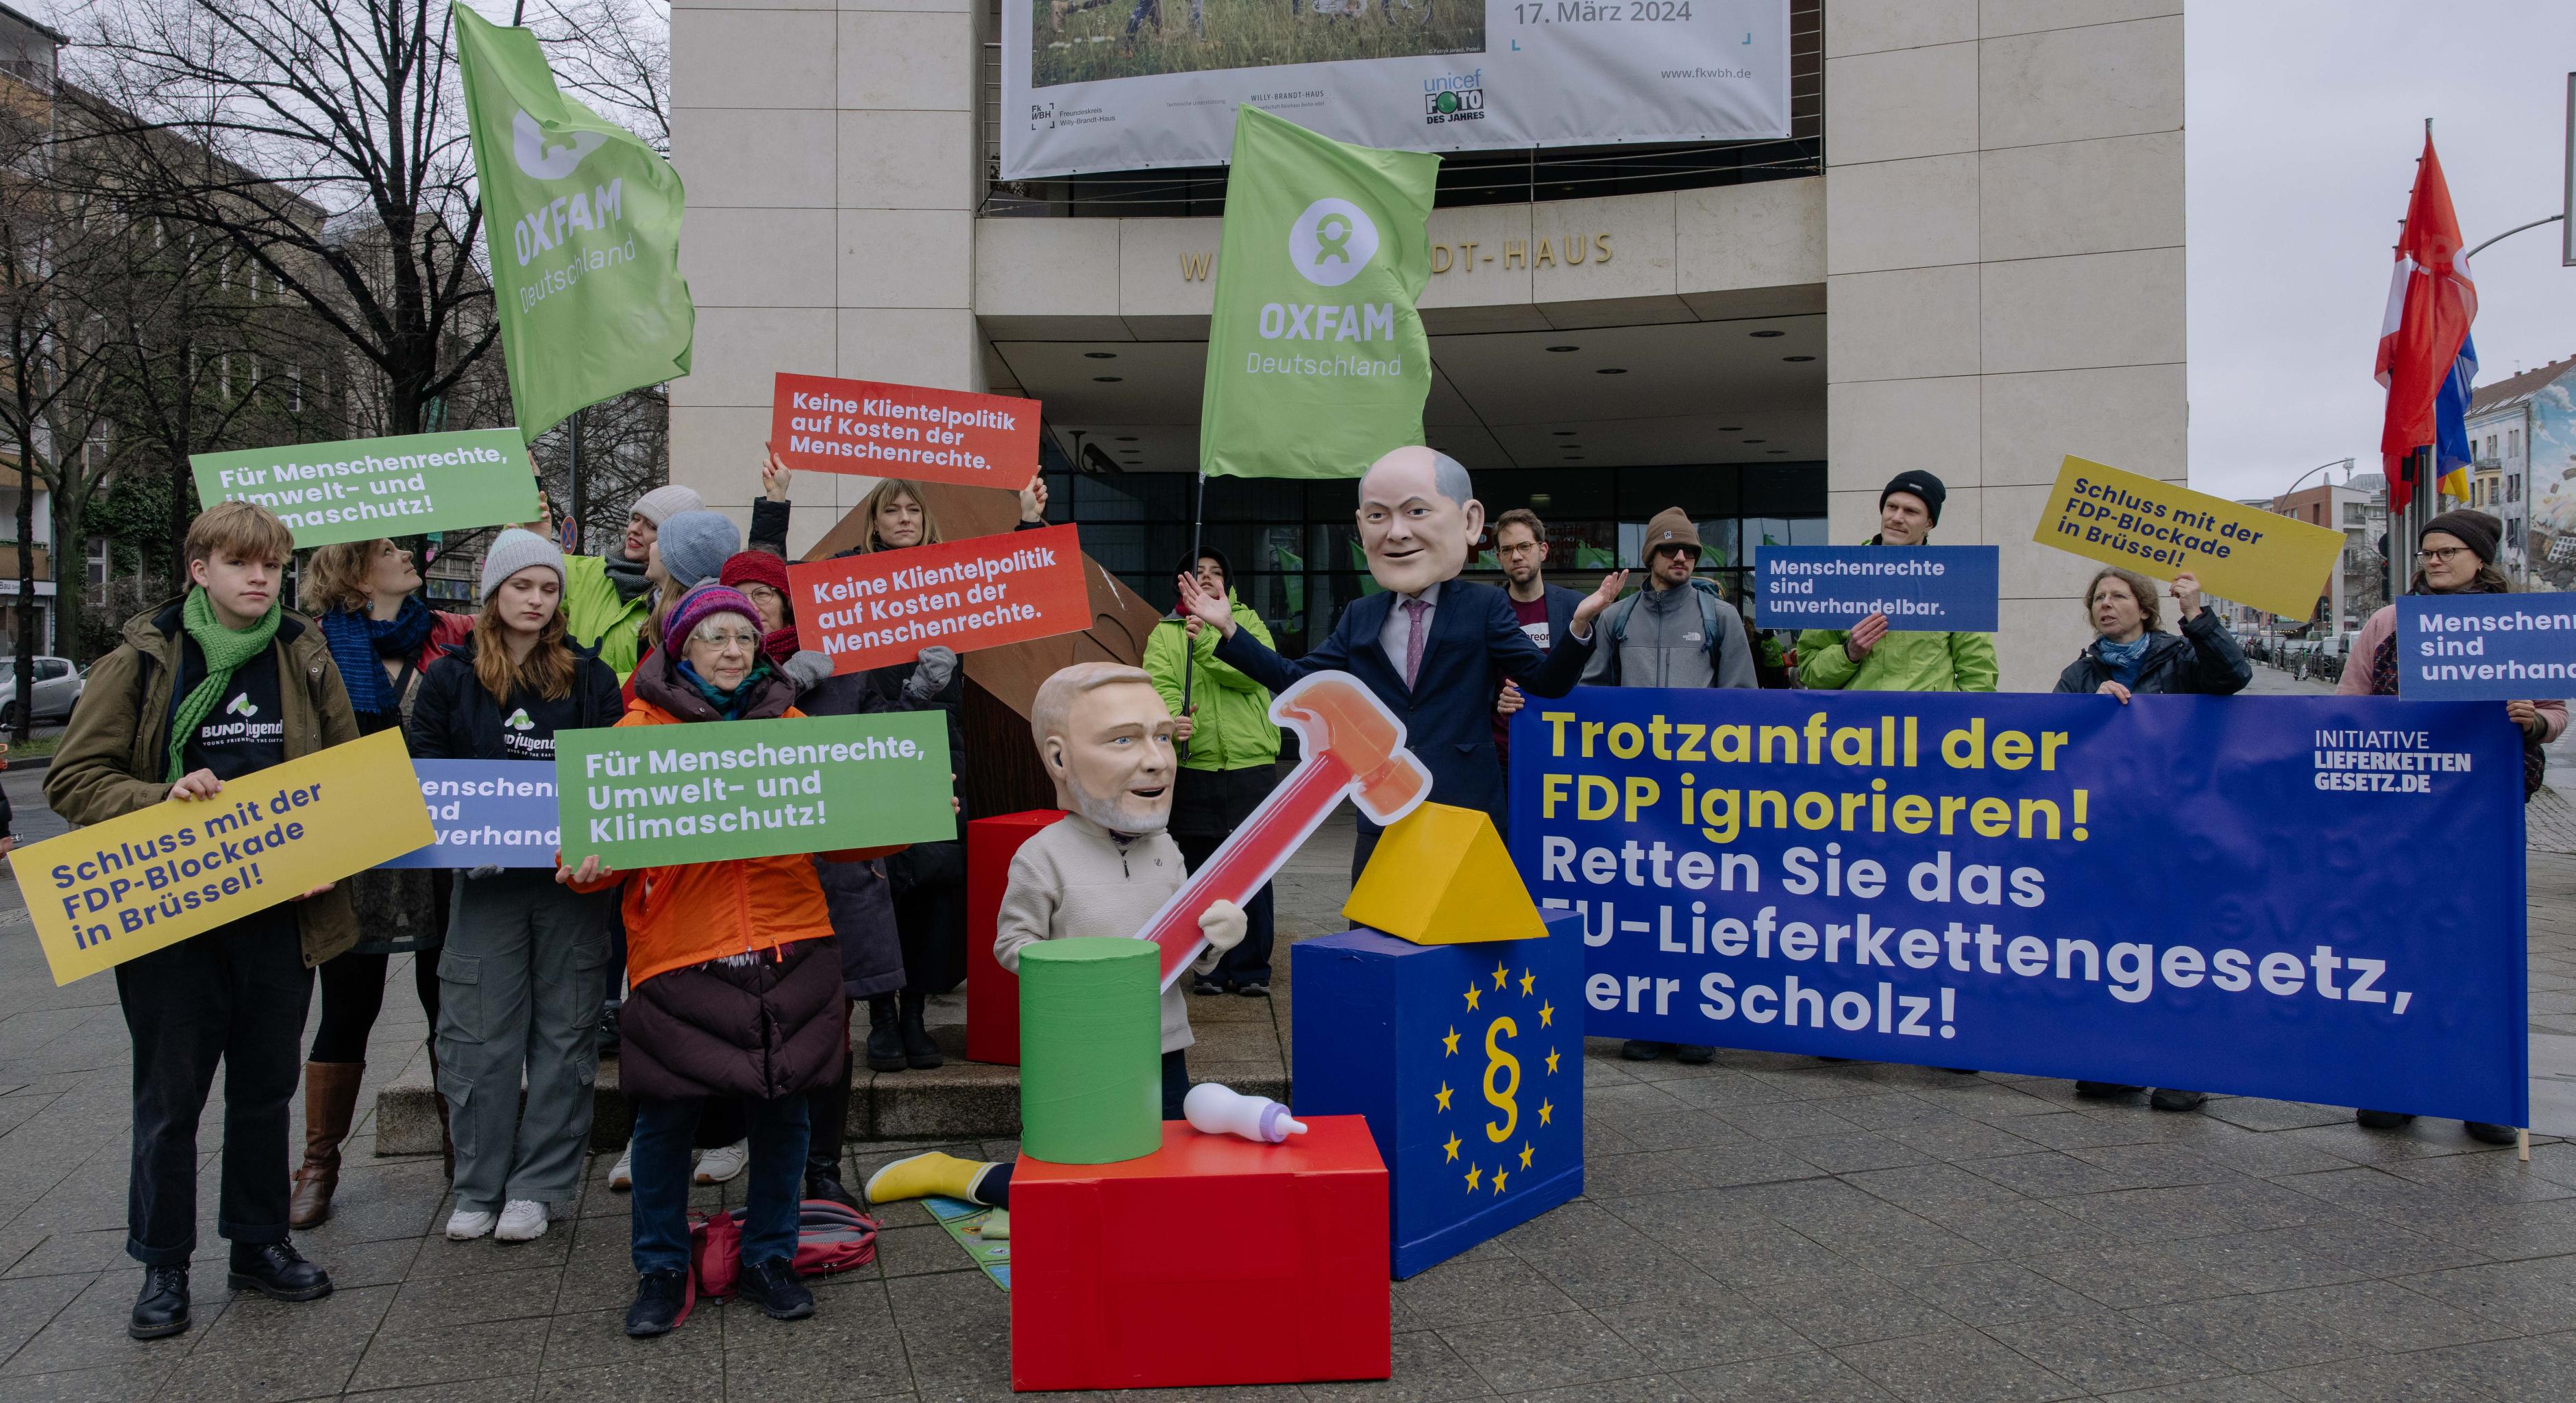 Vor dem Willy-Brandt-Haus stellen als Christian Lindner und Olaf Scholz verkleidete Aktivist*innen einen FDP-Trotzanfall dar und fordern vom Kanzler: "Trotzanfall der FDP ignorieren! Retten Sie das EU-Lieferkettengesetz, Herr Scholz!"